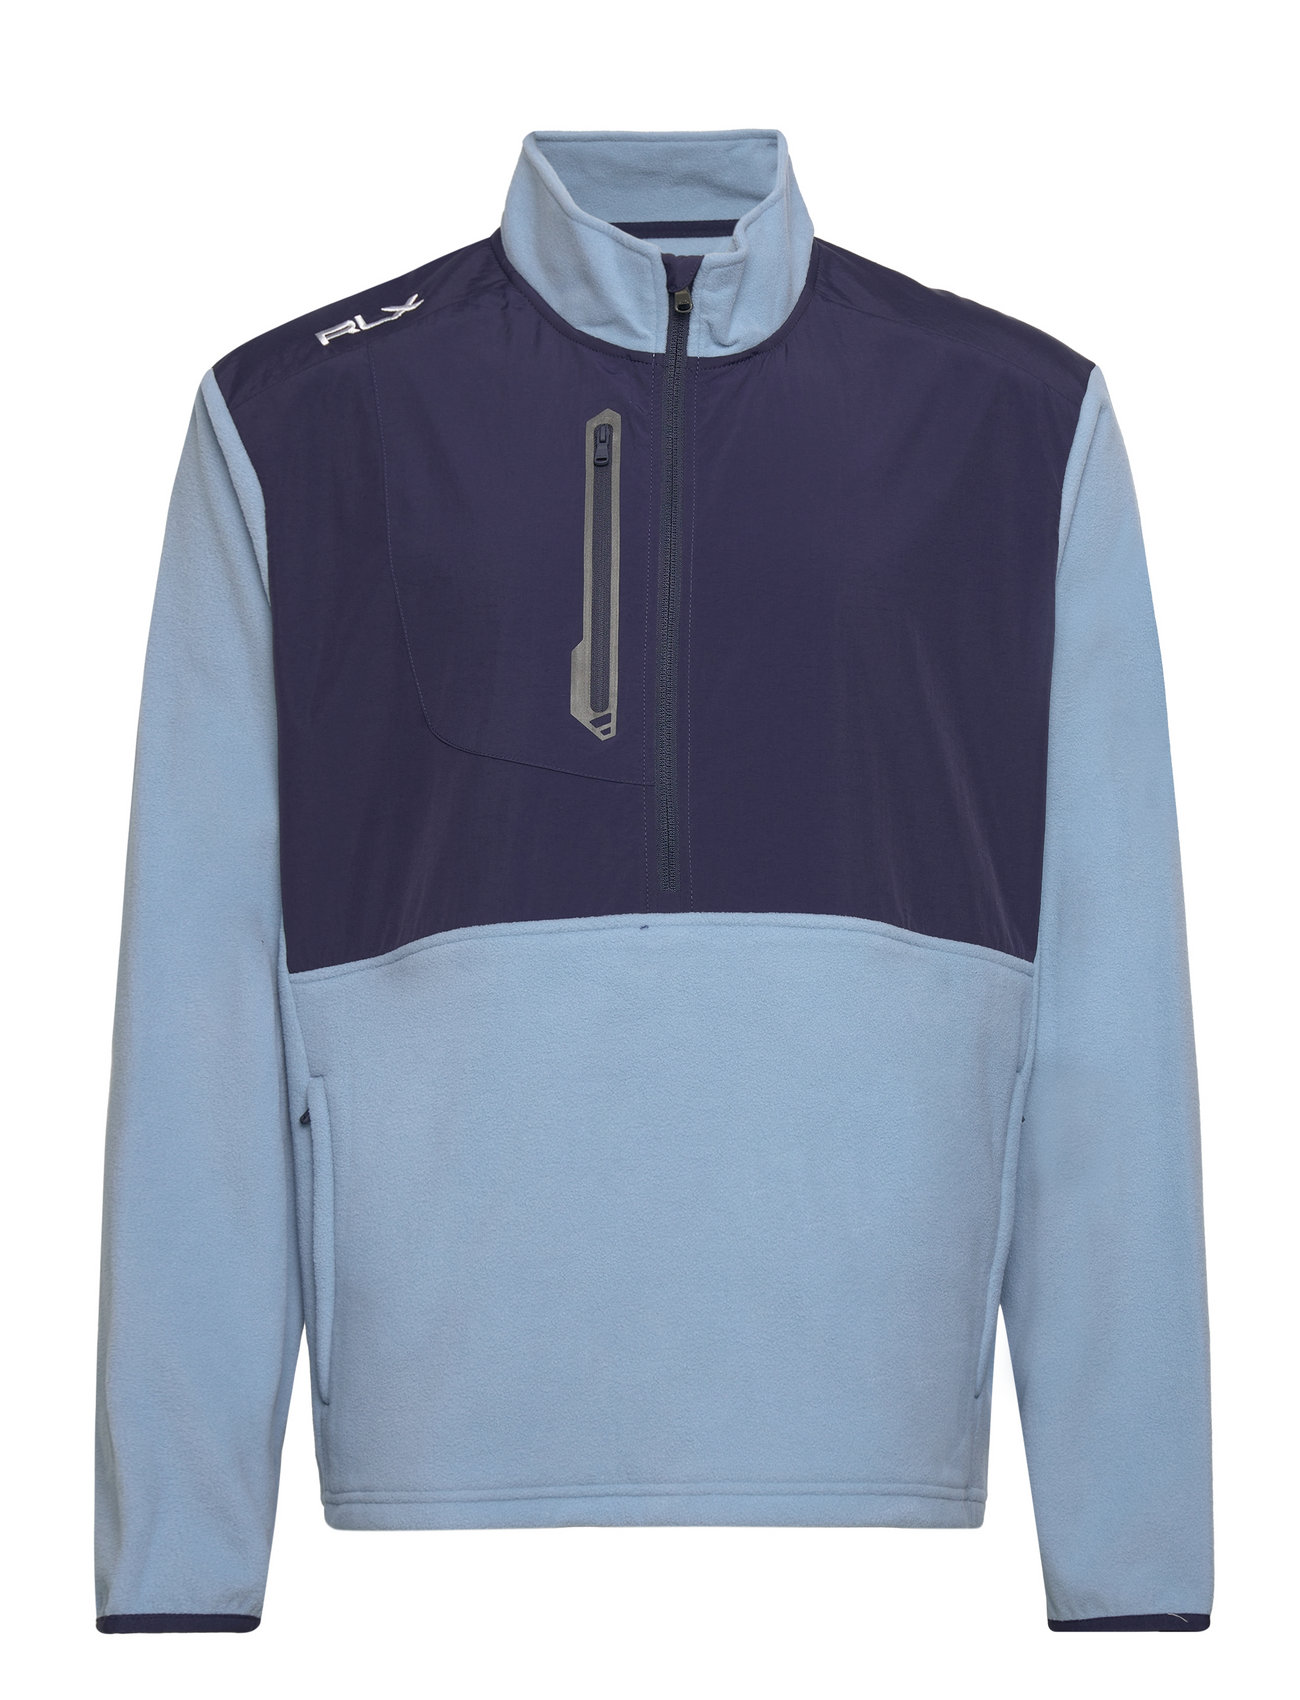 Tour Fleece-Lsl-Sws Sport Sweat-shirts & Hoodies Sweat-shirts Blue Ralph Lauren Golf